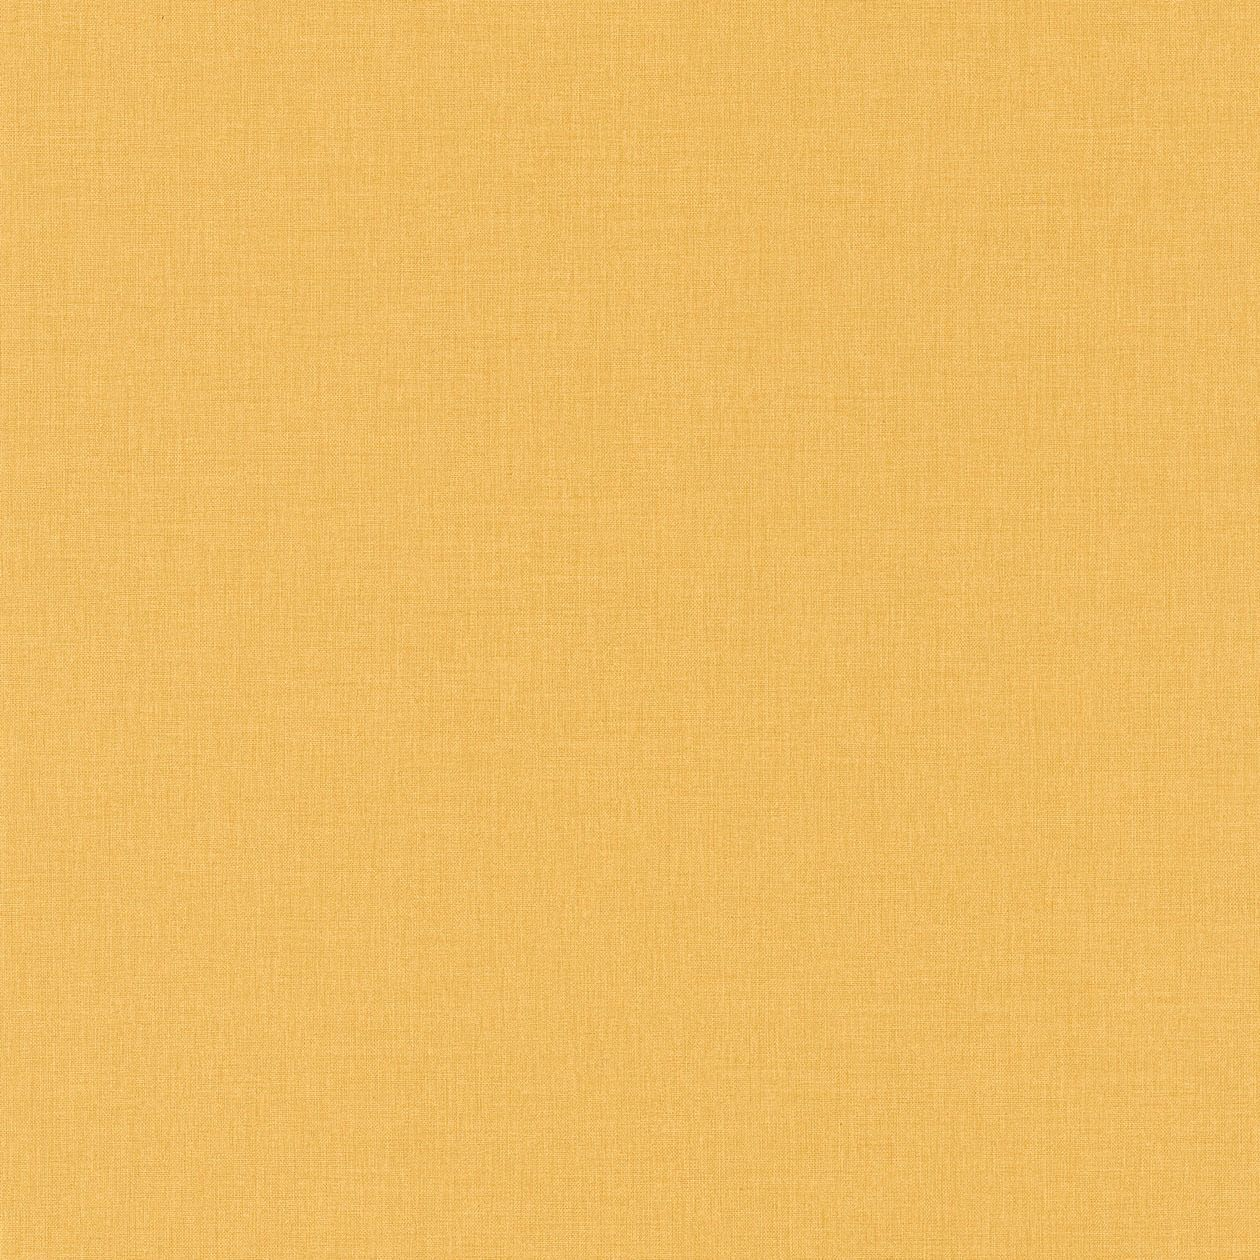 Обои 68522390 Linen Caselio - французские, виниловые, желтого тона, тканевая фактура, в стиле модерн, длина 10.05м, ширина 0.53м, рекомендуем детские.